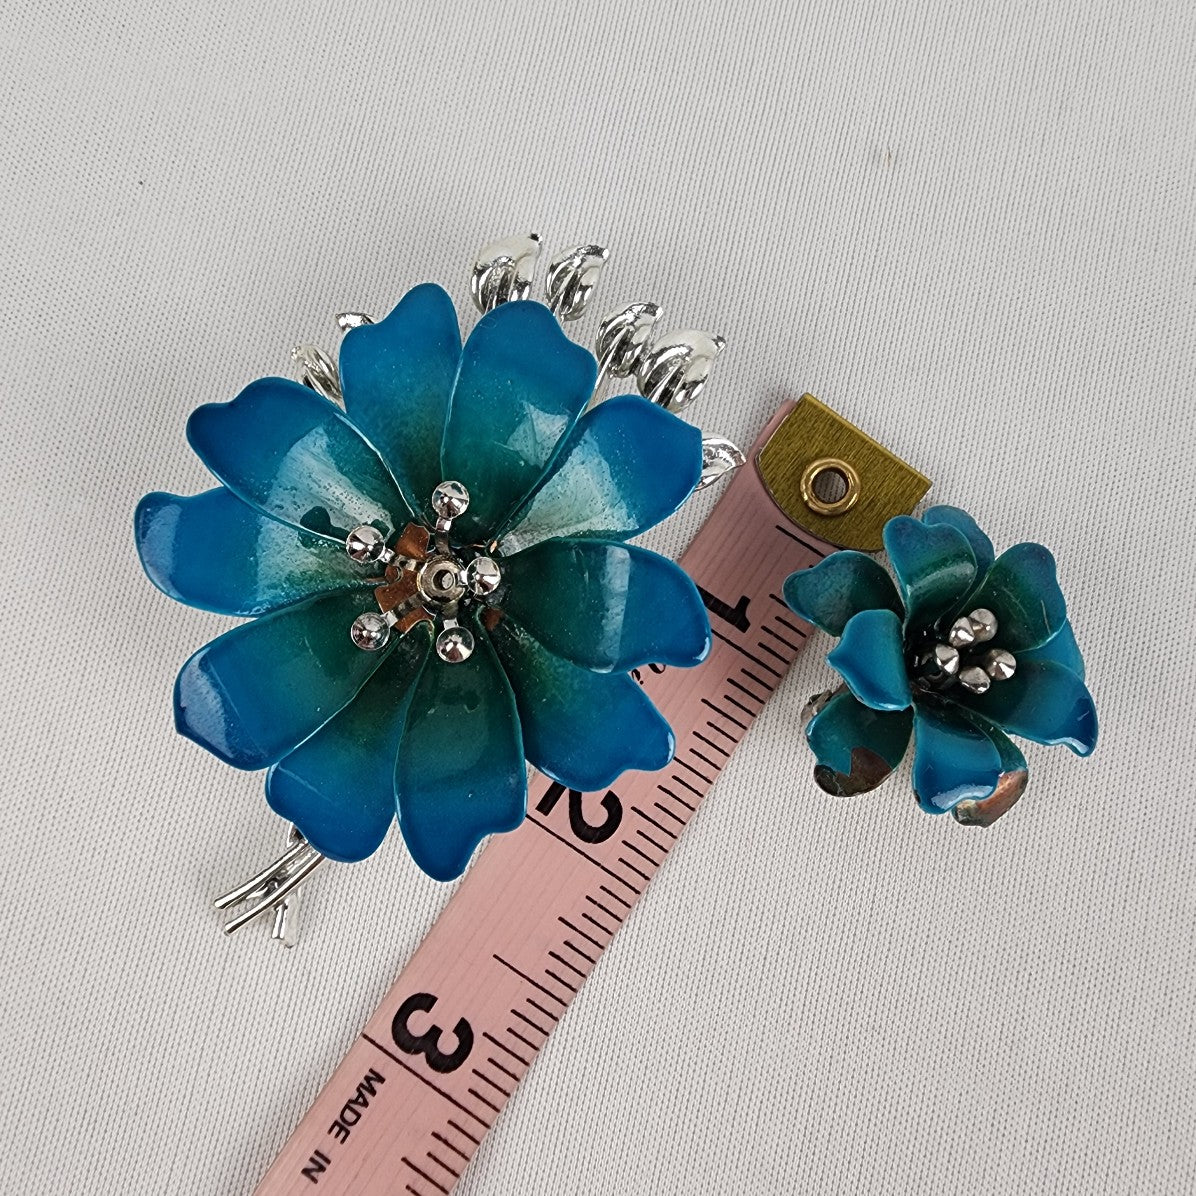 Vintage Coro Silver Tone Blue Enamel Flower Brooch & Clip On Earring Set